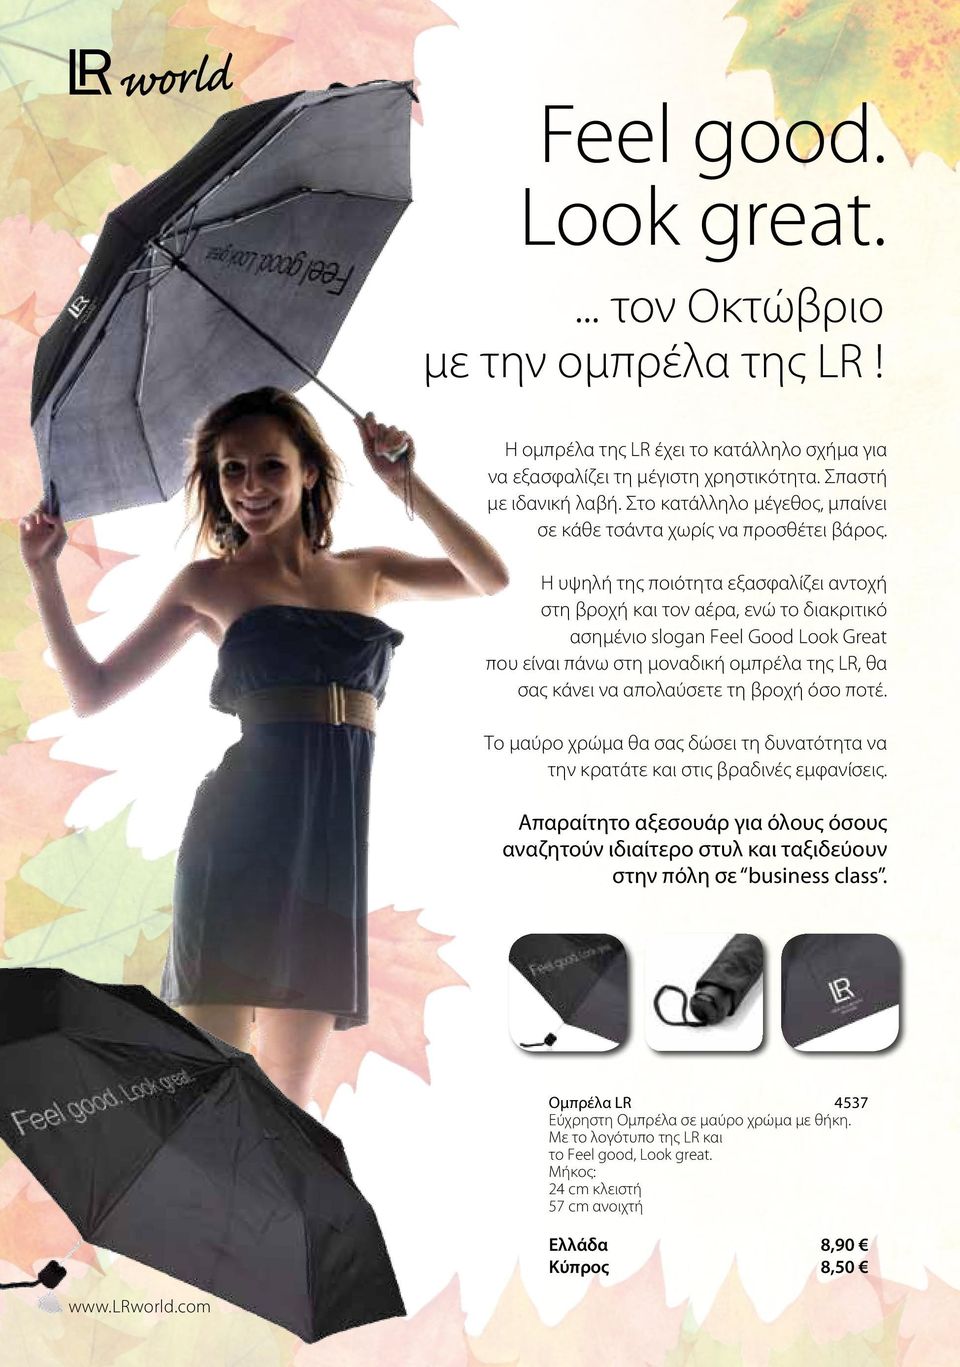 Η υψηλή της ποιότητα εξασφαλίζει αντοχή στη βροχή και τον αέρα, ενώ το διακριτικό ασημένιο slogan Feel Good Look Great που είναι πάνω στη μοναδική ομπρέλα της LR, θα σας κάνει να απολαύσετε τη βροχή